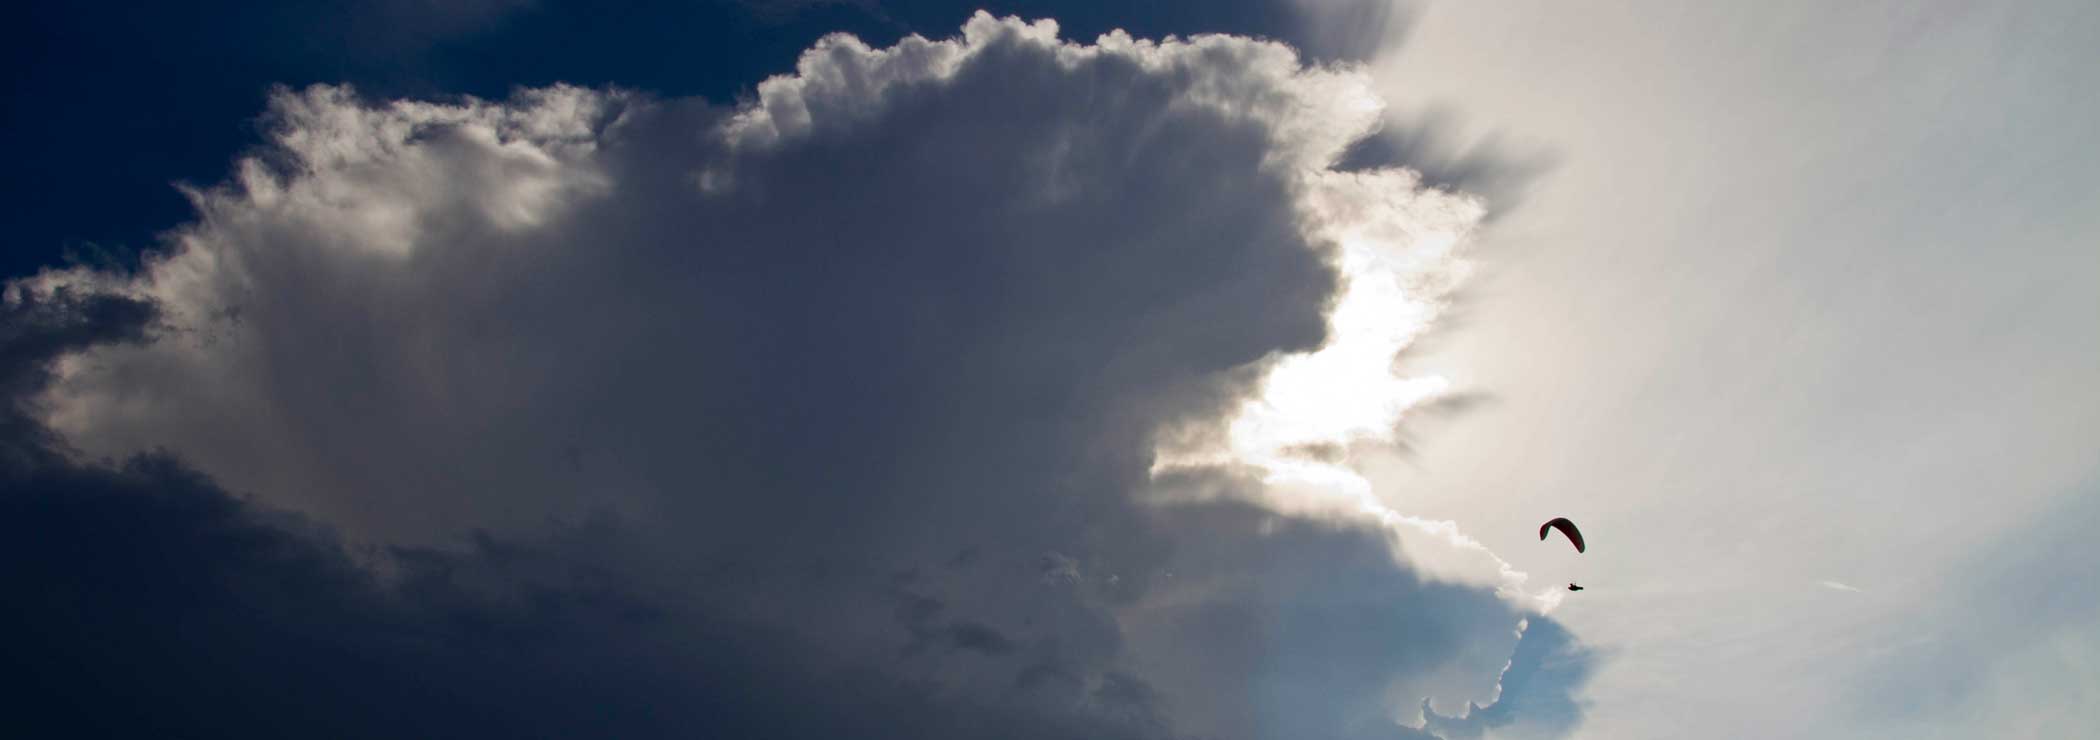 Cloud: Gewitterwolke mit Gleitschirm